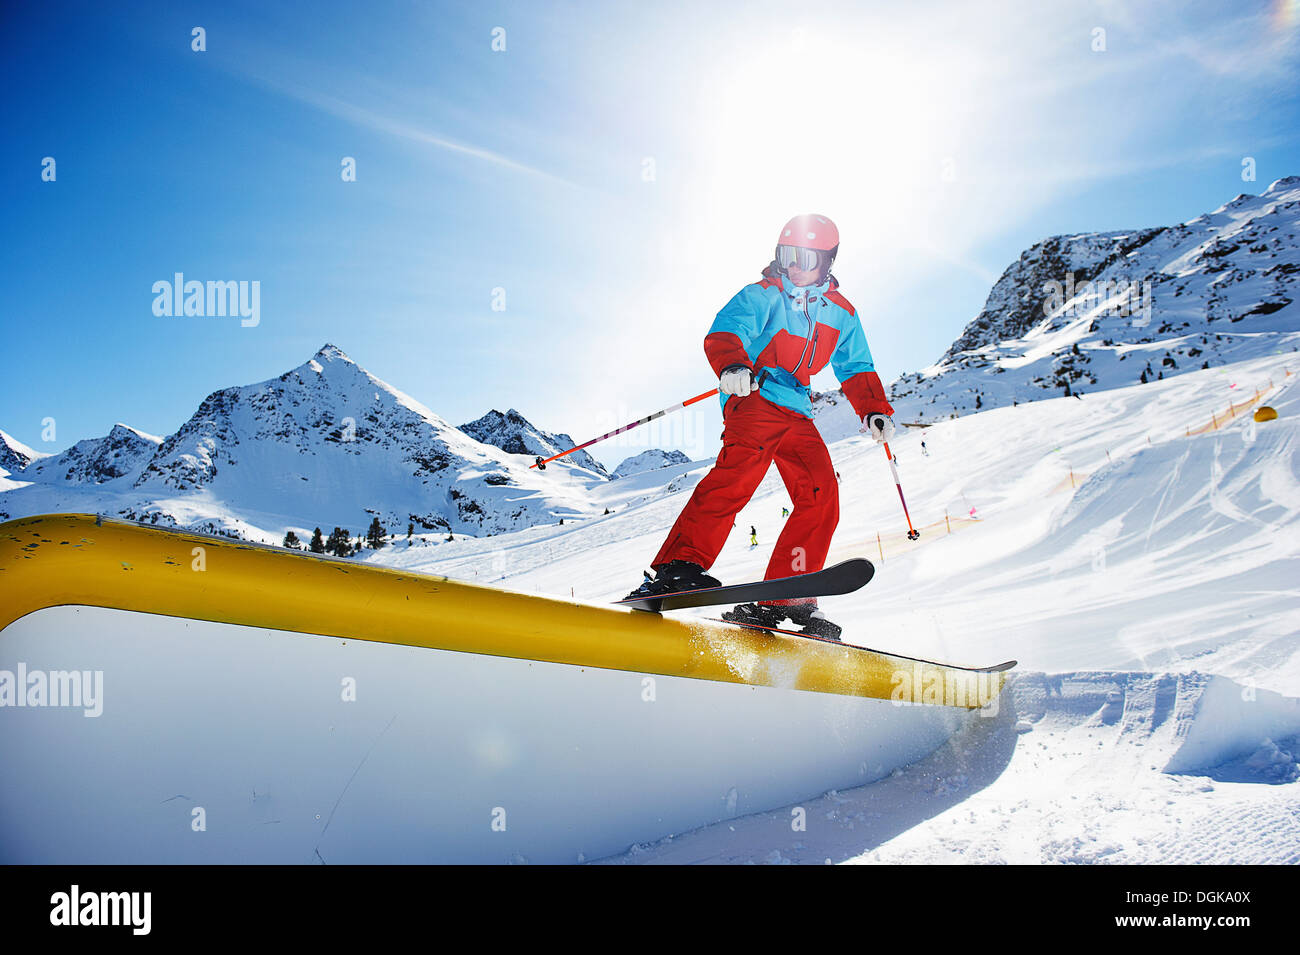 Skieur faisant des tours sur perche Banque D'Images